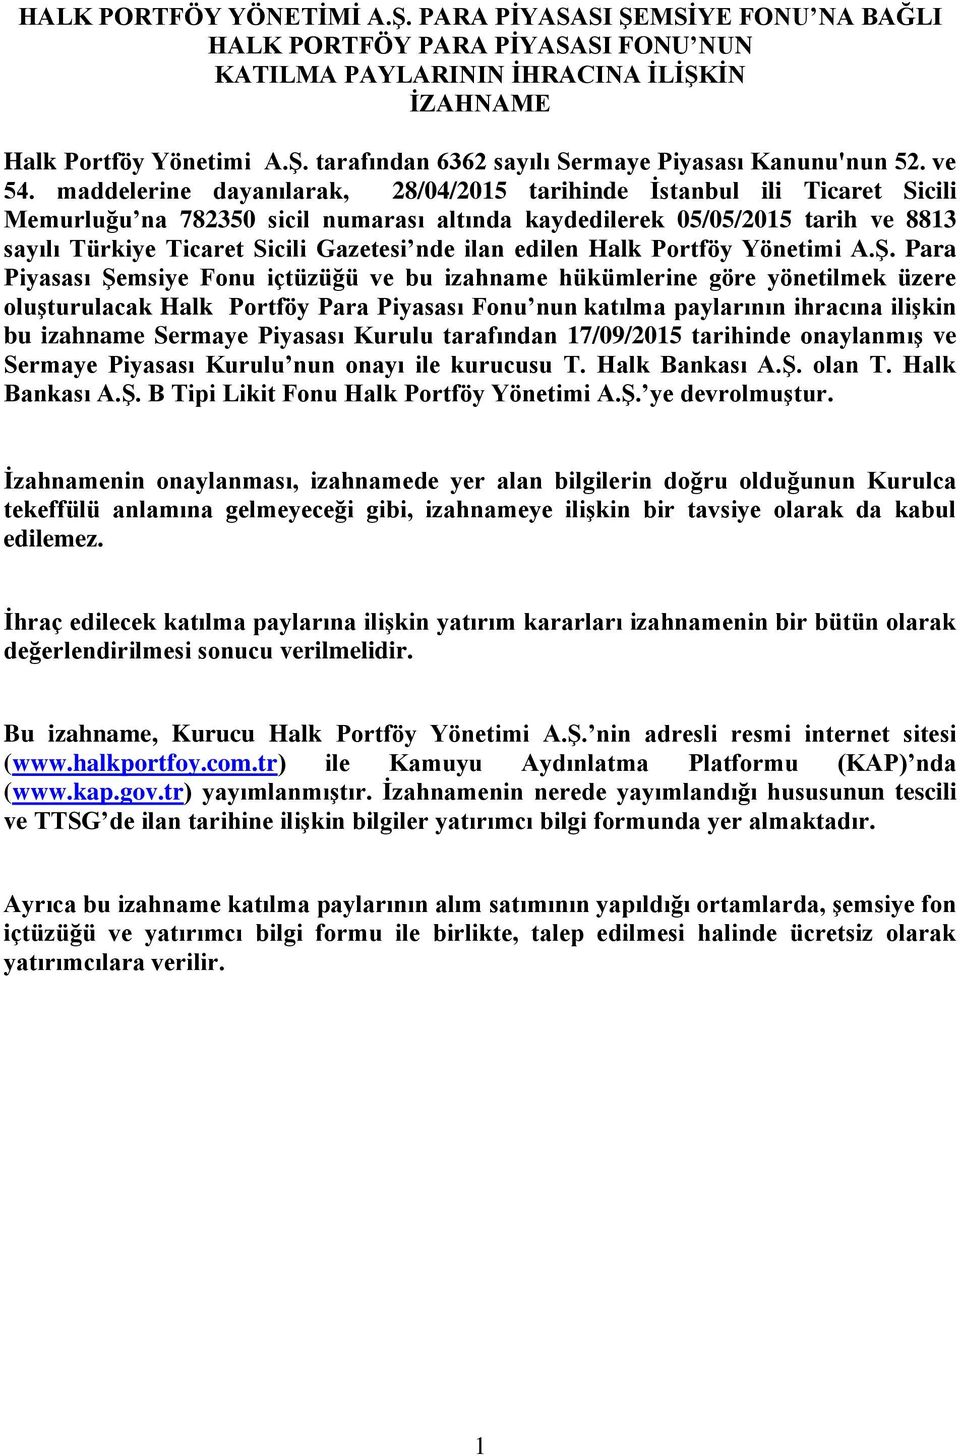 maddelerine dayanılarak, 28/04/2015 tarihinde İstanbul ili Ticaret Sicili Memurluğu na 782350 sicil numarası altında kaydedilerek 05/05/2015 tarih ve 8813 sayılı Türkiye Ticaret Sicili Gazetesi nde